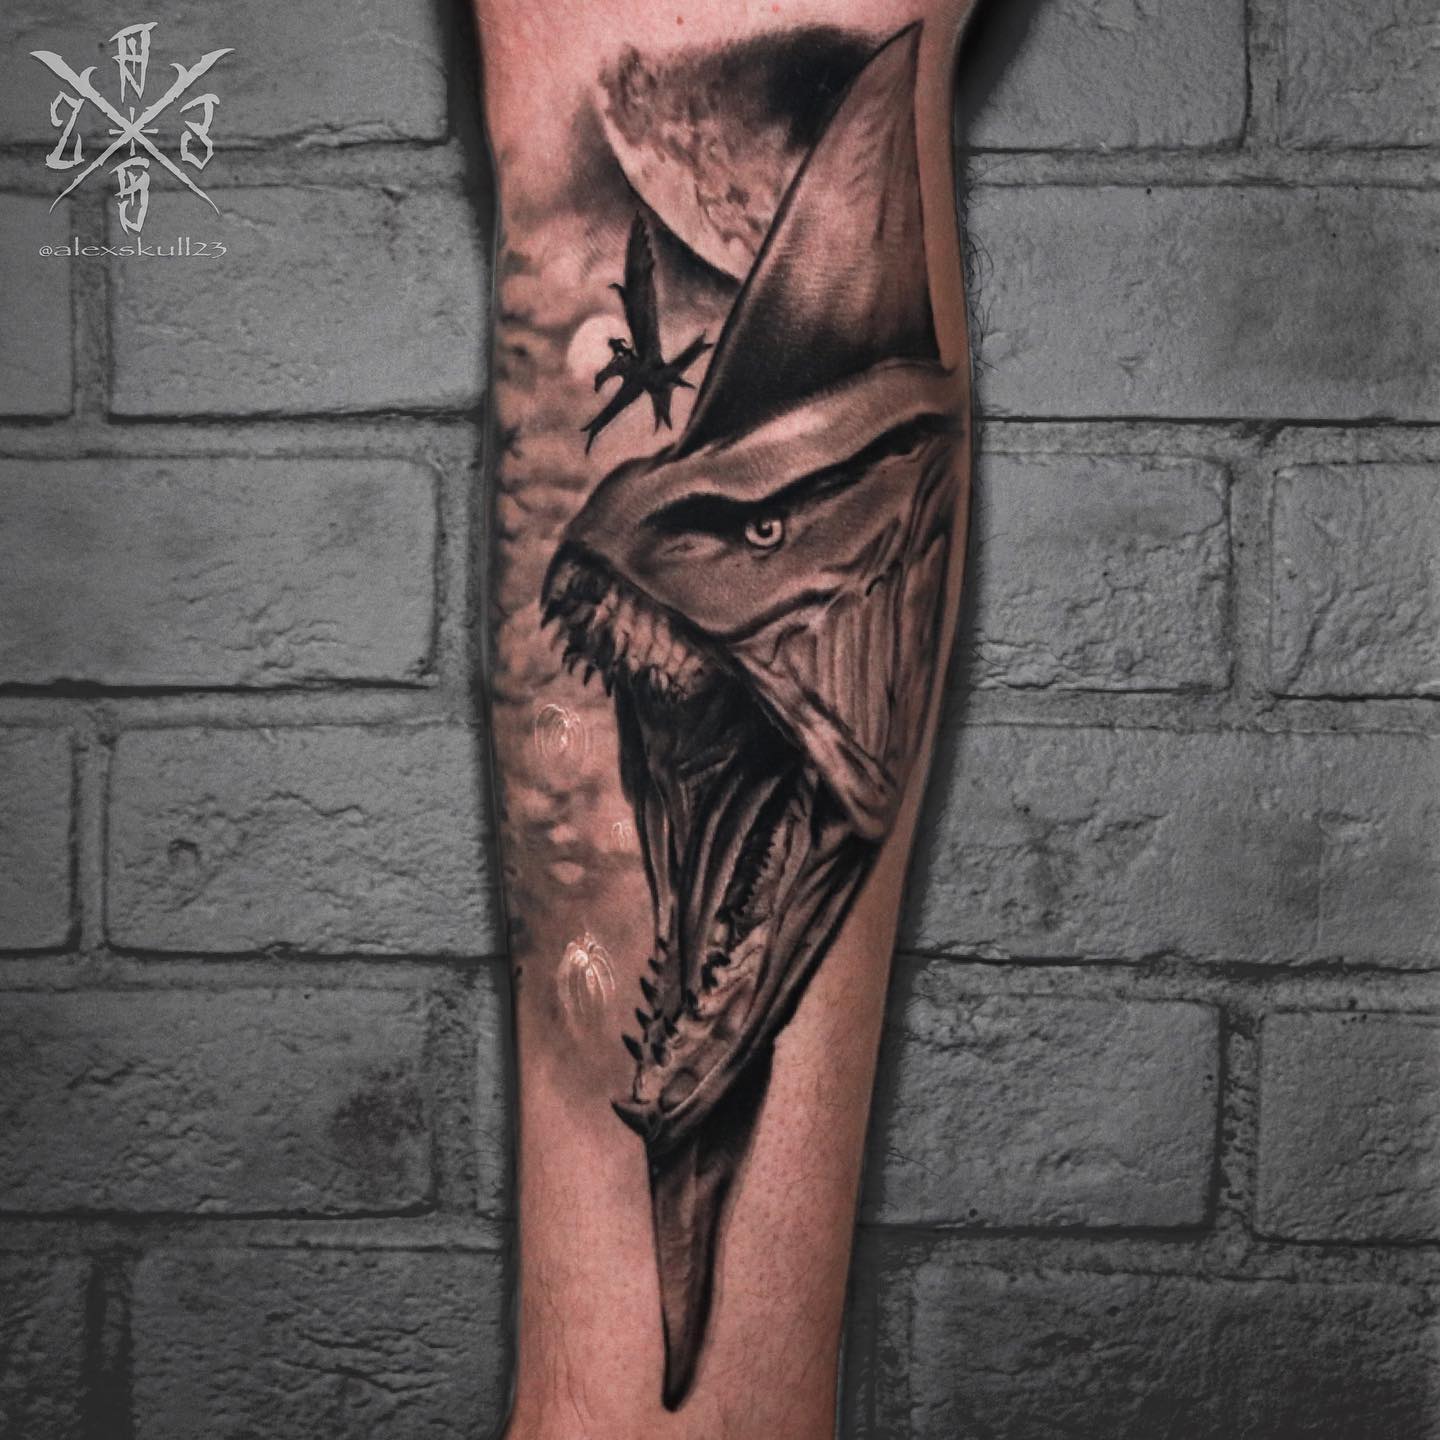 Blades of Chaos tattoo on my leg by Sal at Singleton Tattoo Dallas TX   rGodofWar